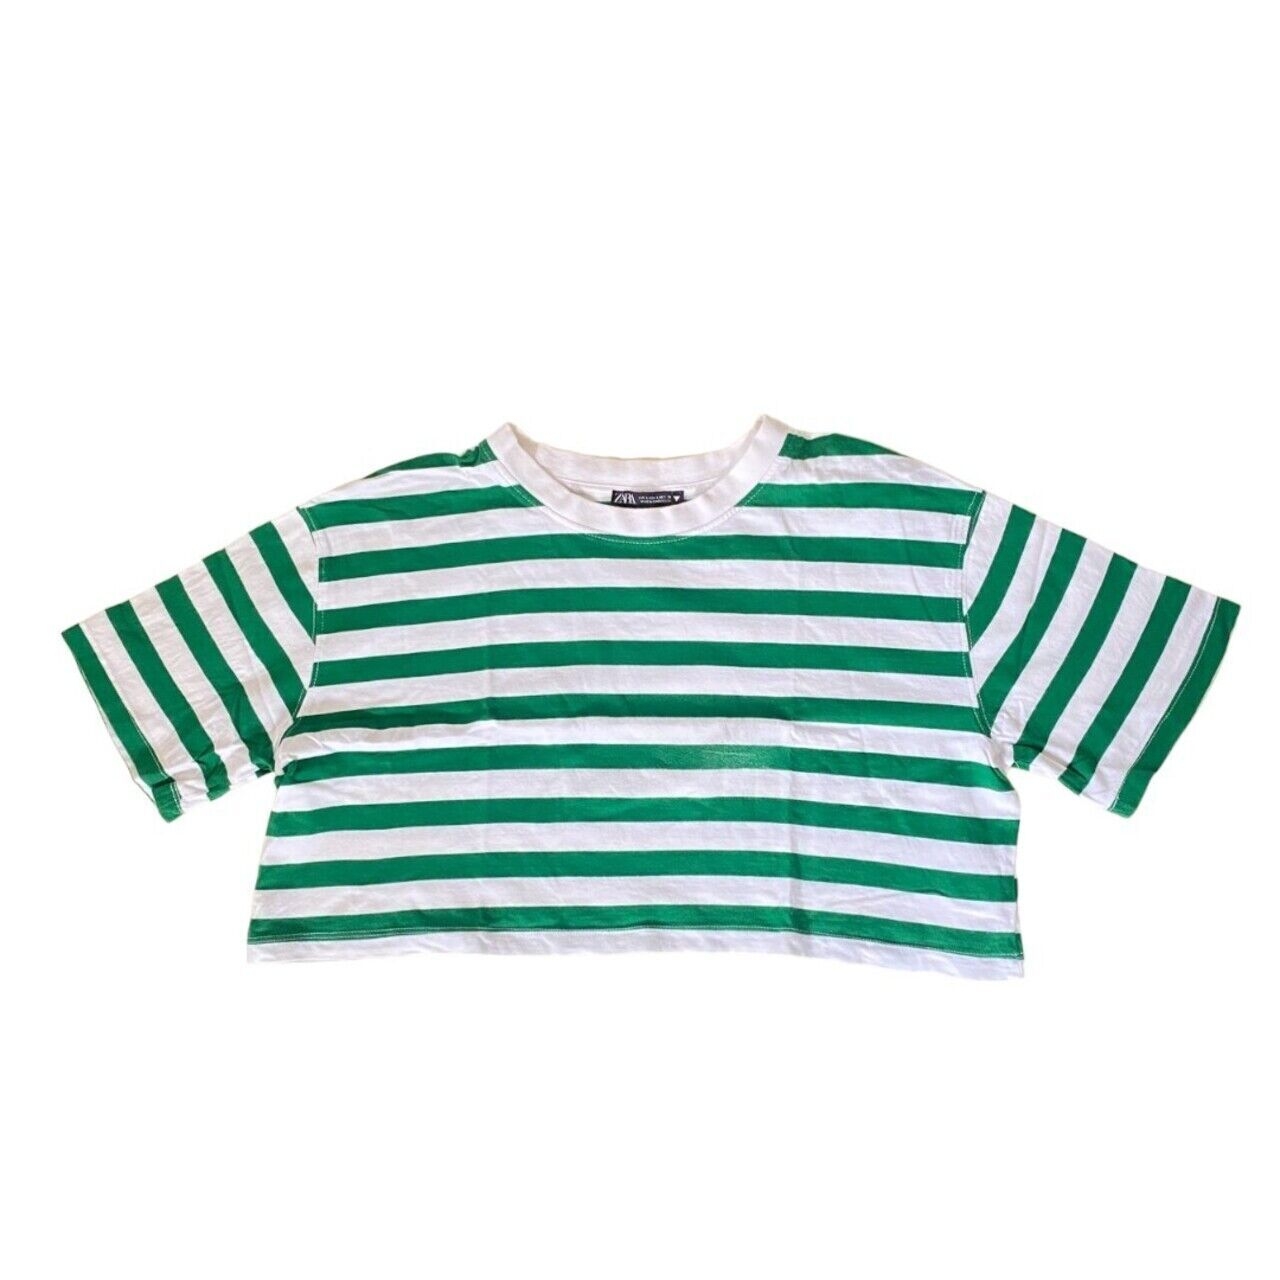 Zara Green & White Stripes Cropped T-Shirt